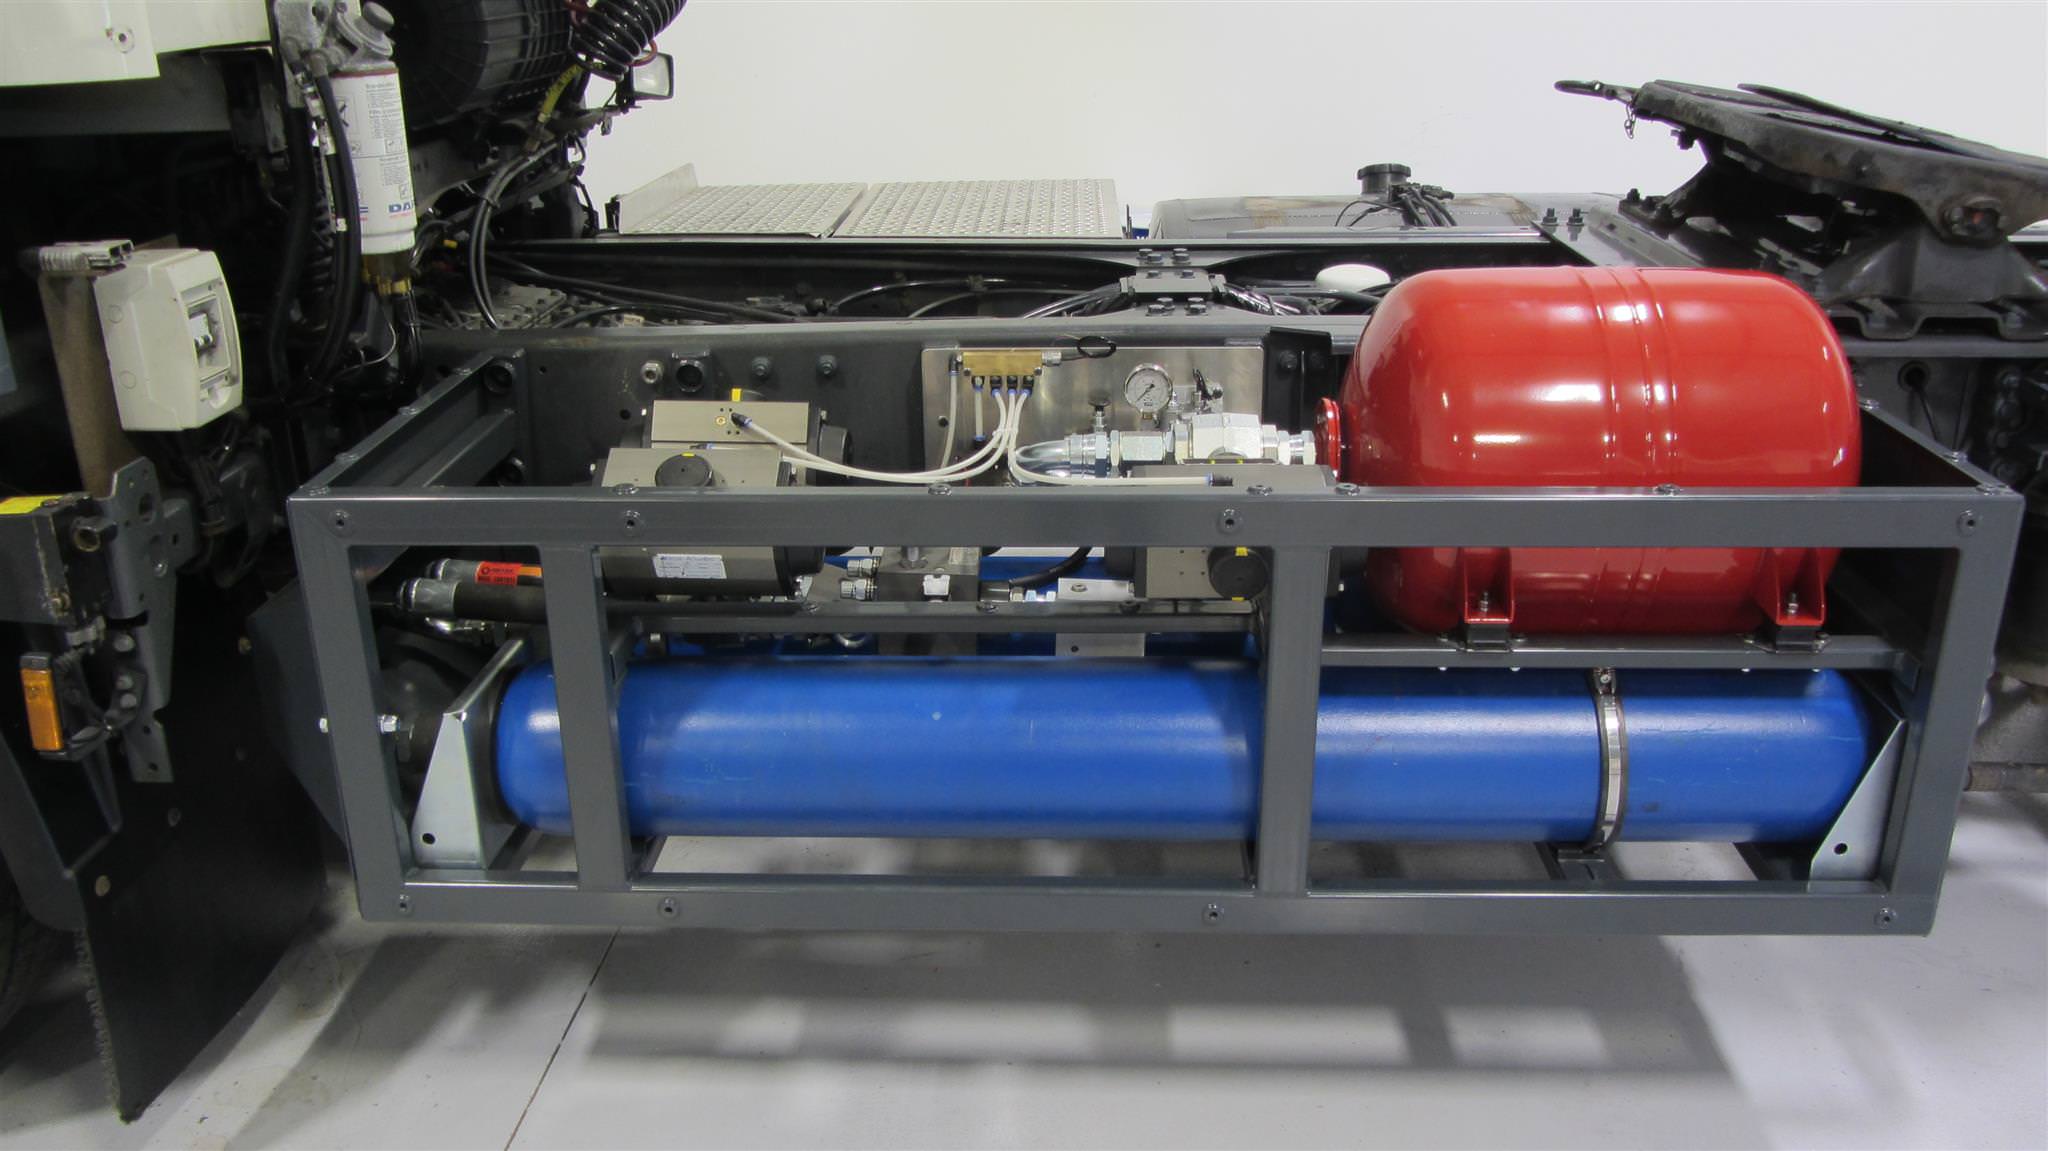 Gallery MISER Hydraulic Hybrid Transmission 3